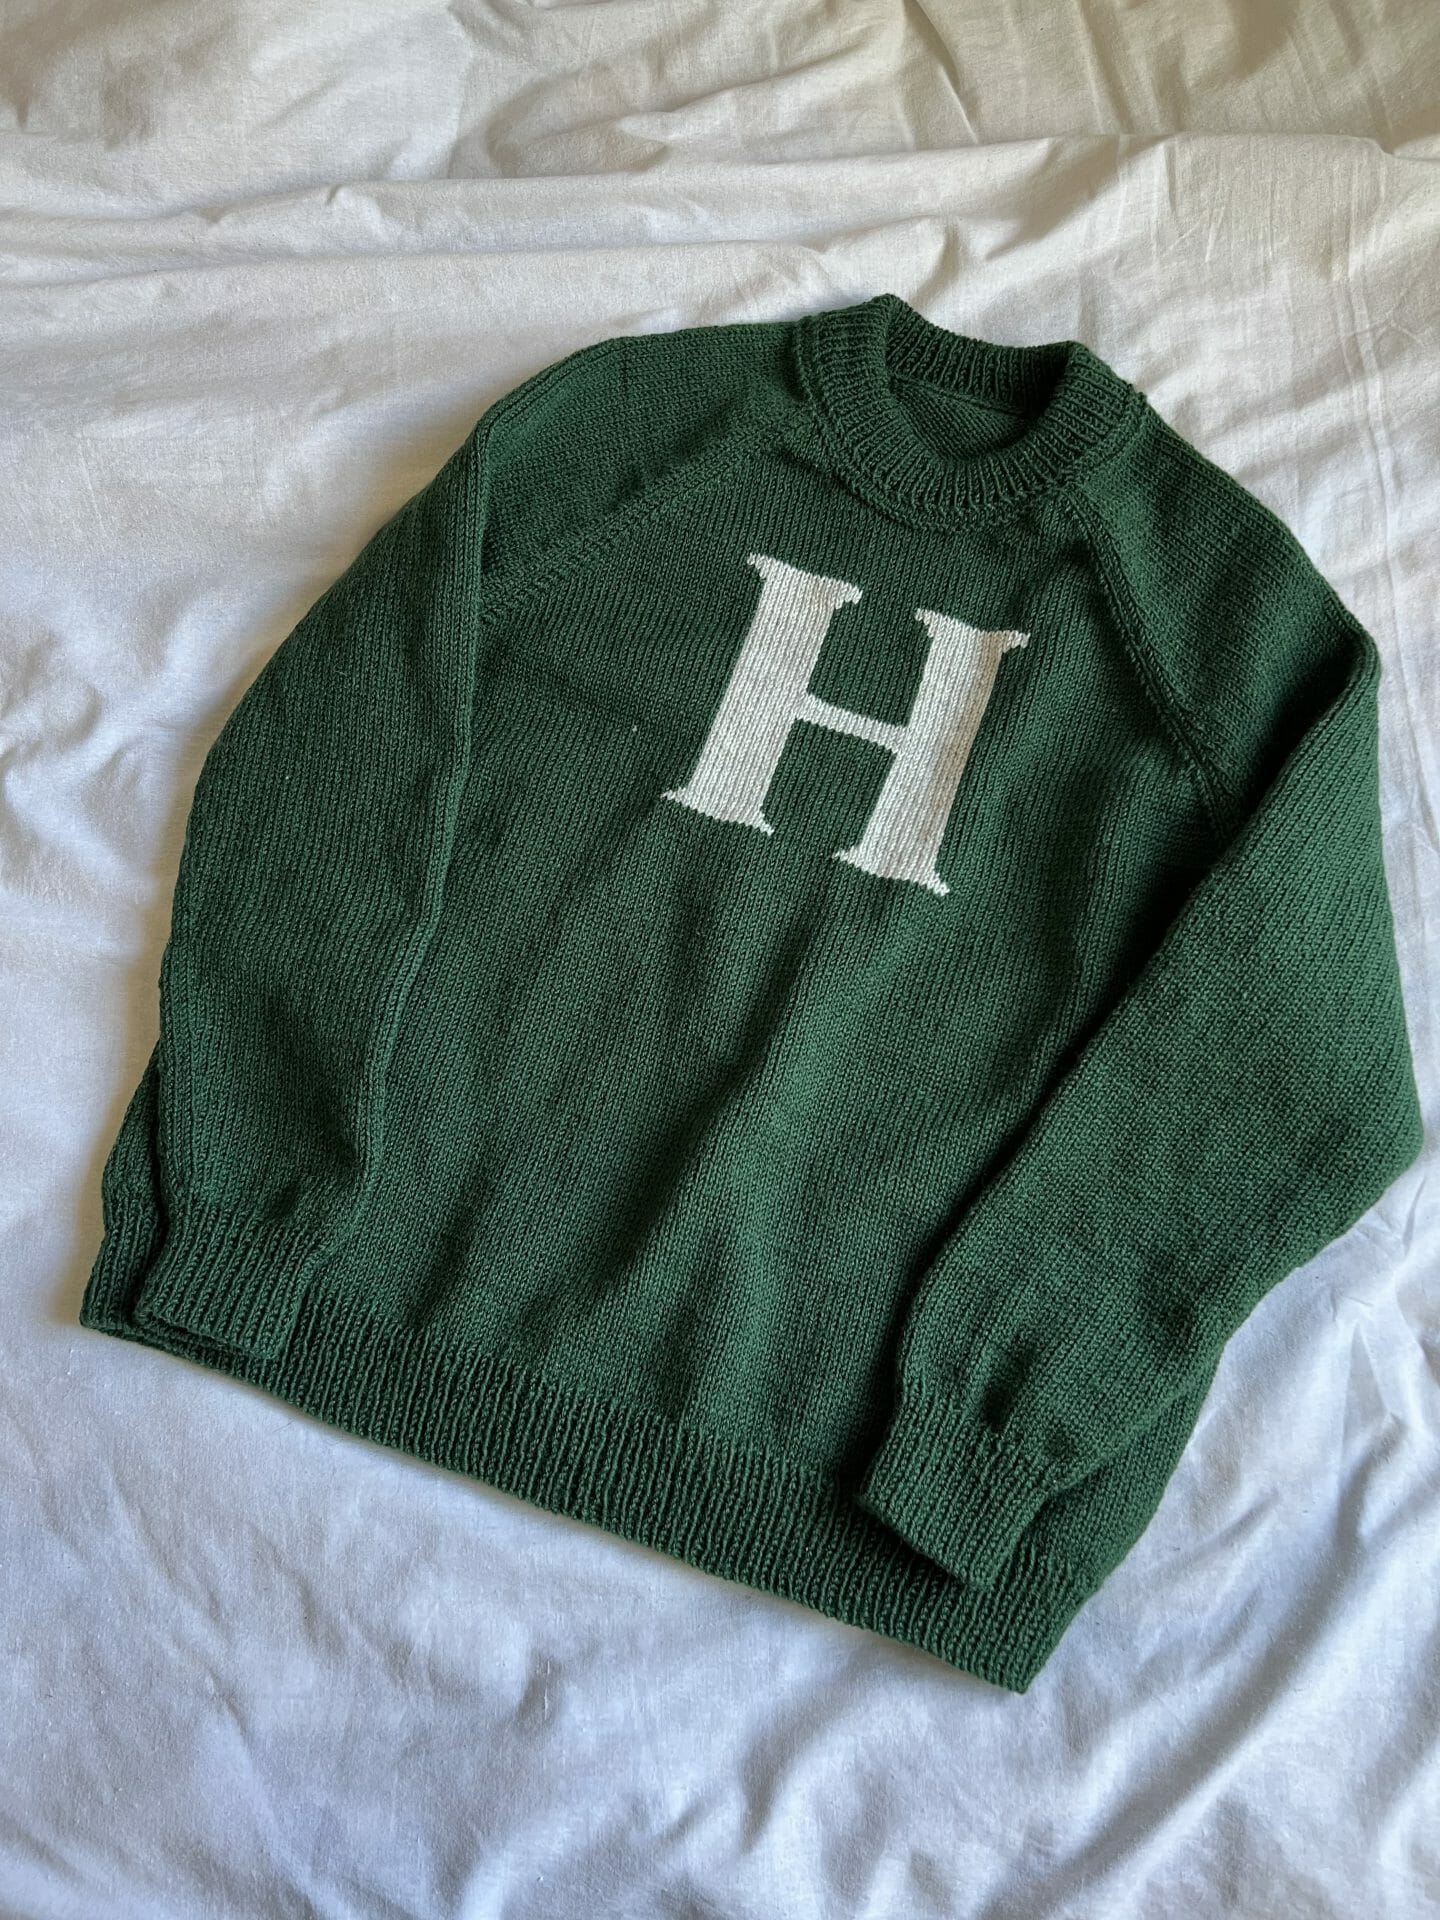 Weasley sweater